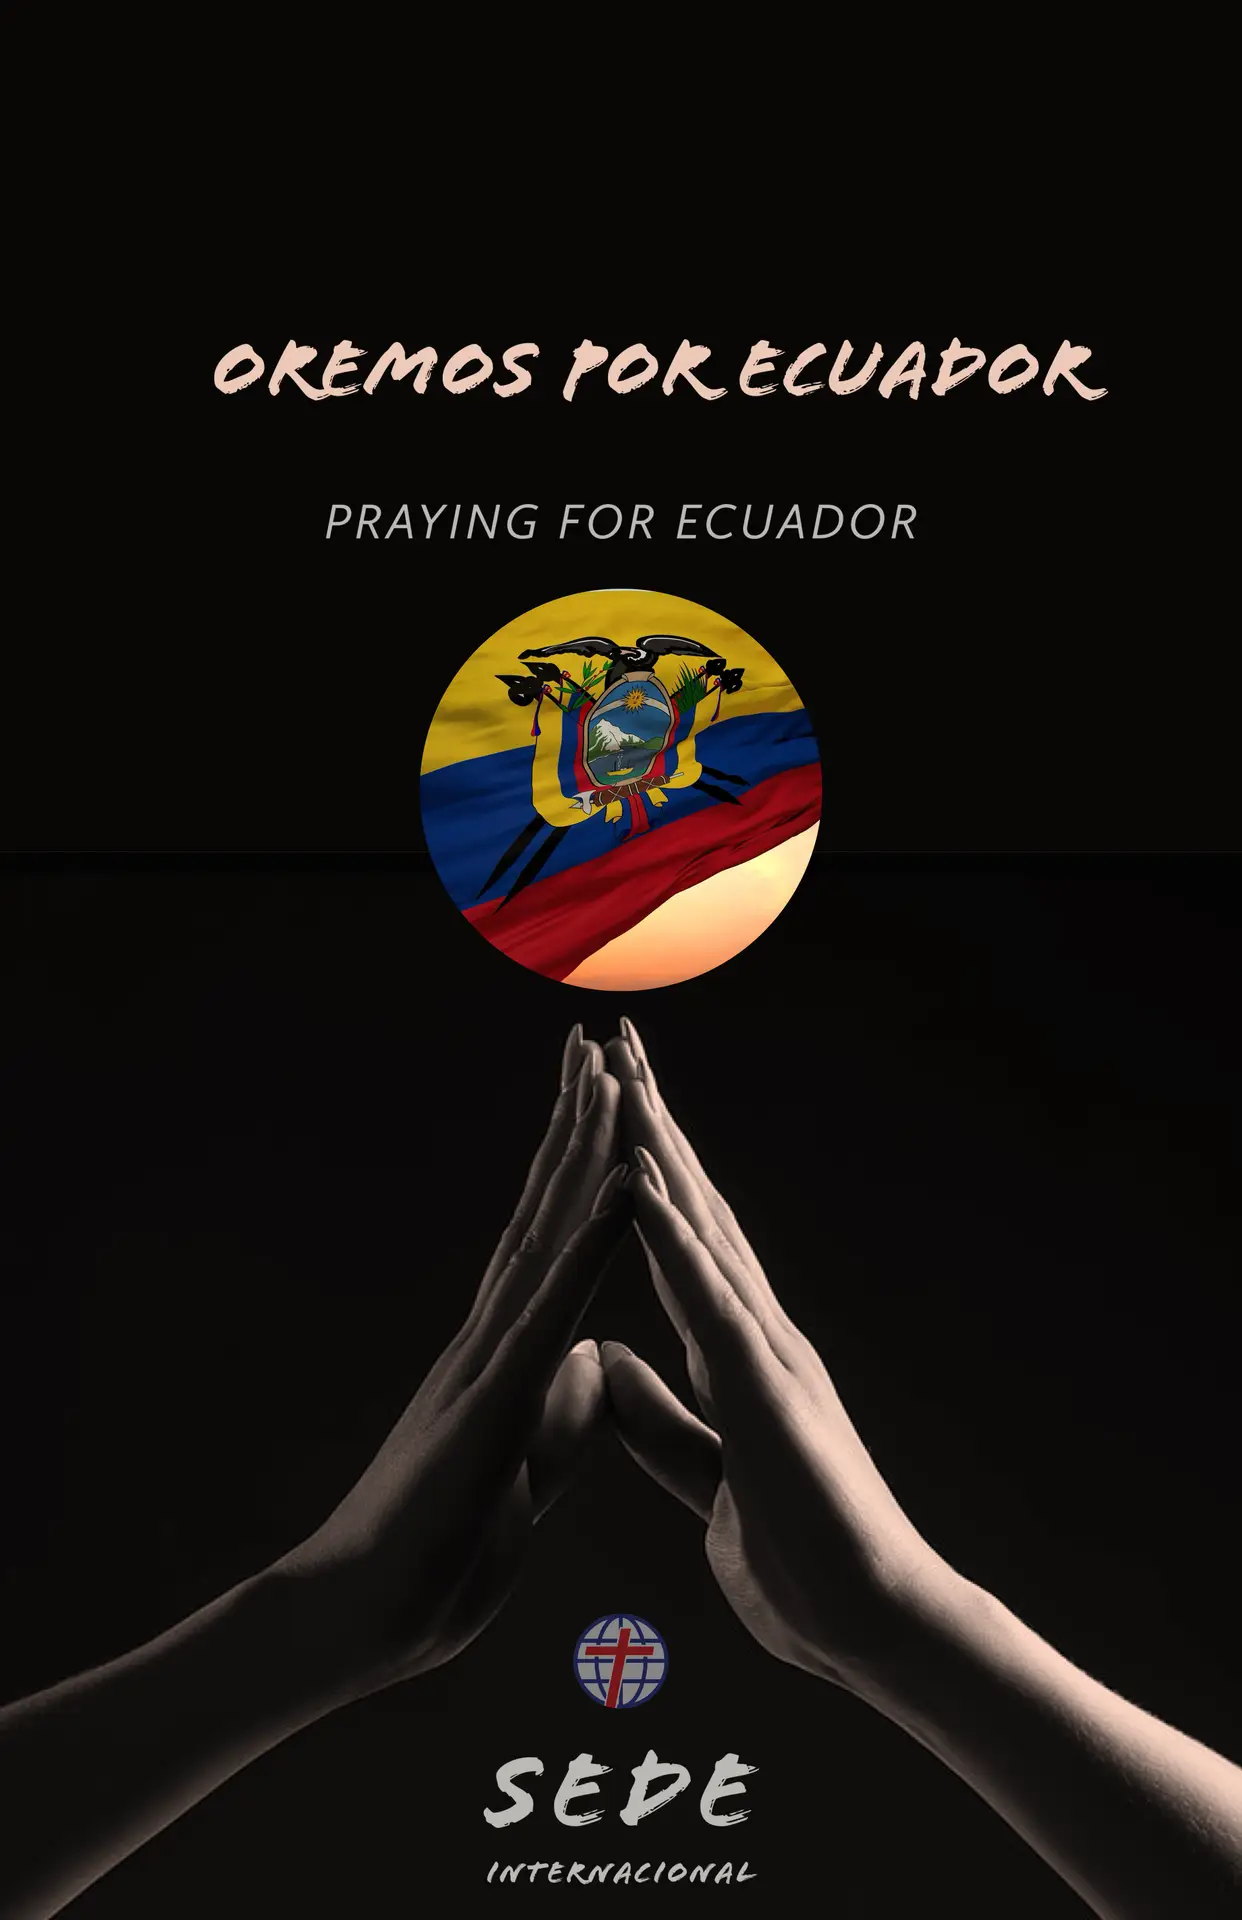 OREMOS POR ECUADOR / PRAY FOR ECUADOR